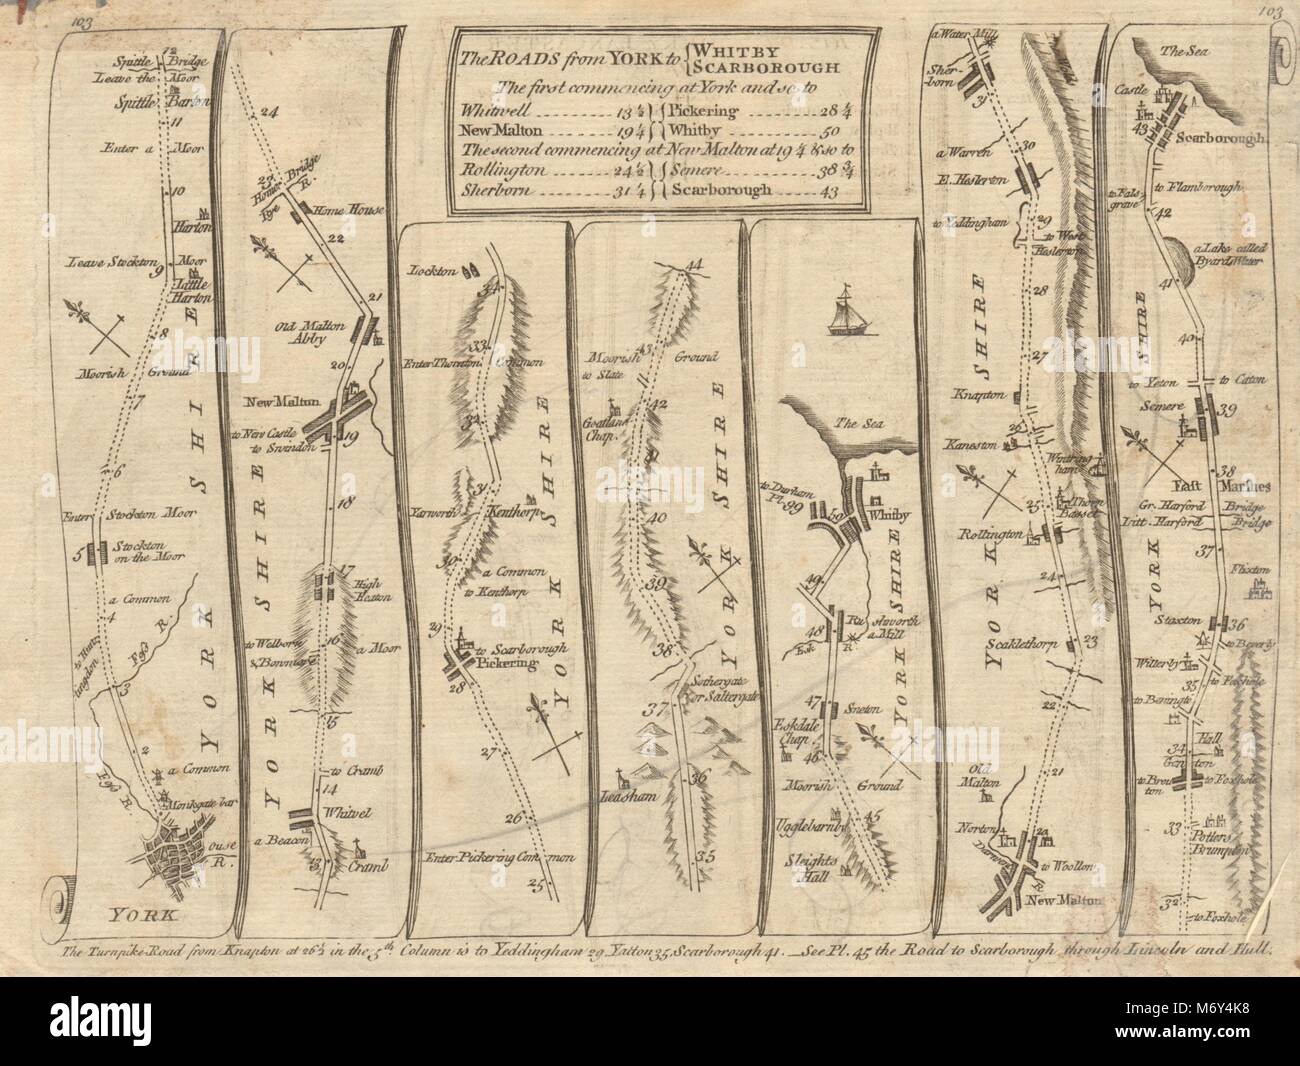 York Malton Pickering Whitby Sherburn Scarborough. KITCHIN road map 1767 Stock Photo